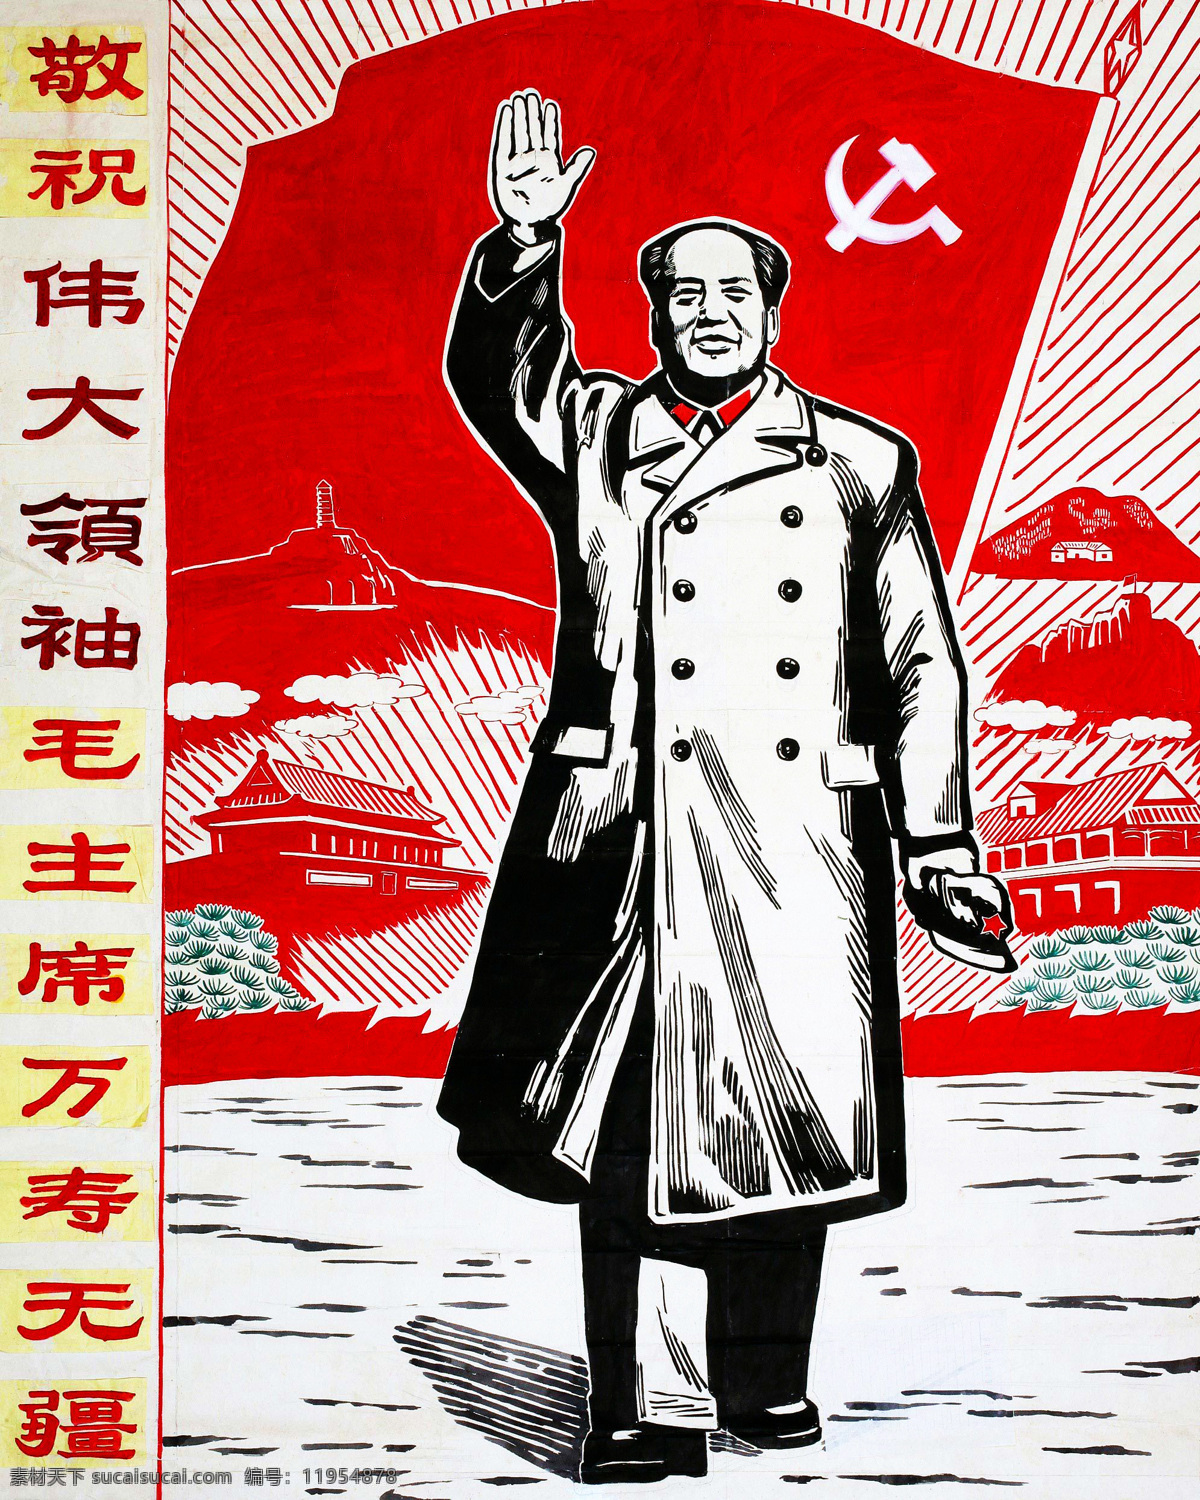 毛主席 毛泽东 传大领袖 革命宣传 社会主义 宣传画 红色广告 红色经典 70年代 革命 红色 老年代 手绘宣传 中国画 传统画 工笔画 插画 绘画图文 文化艺术 绘画书法